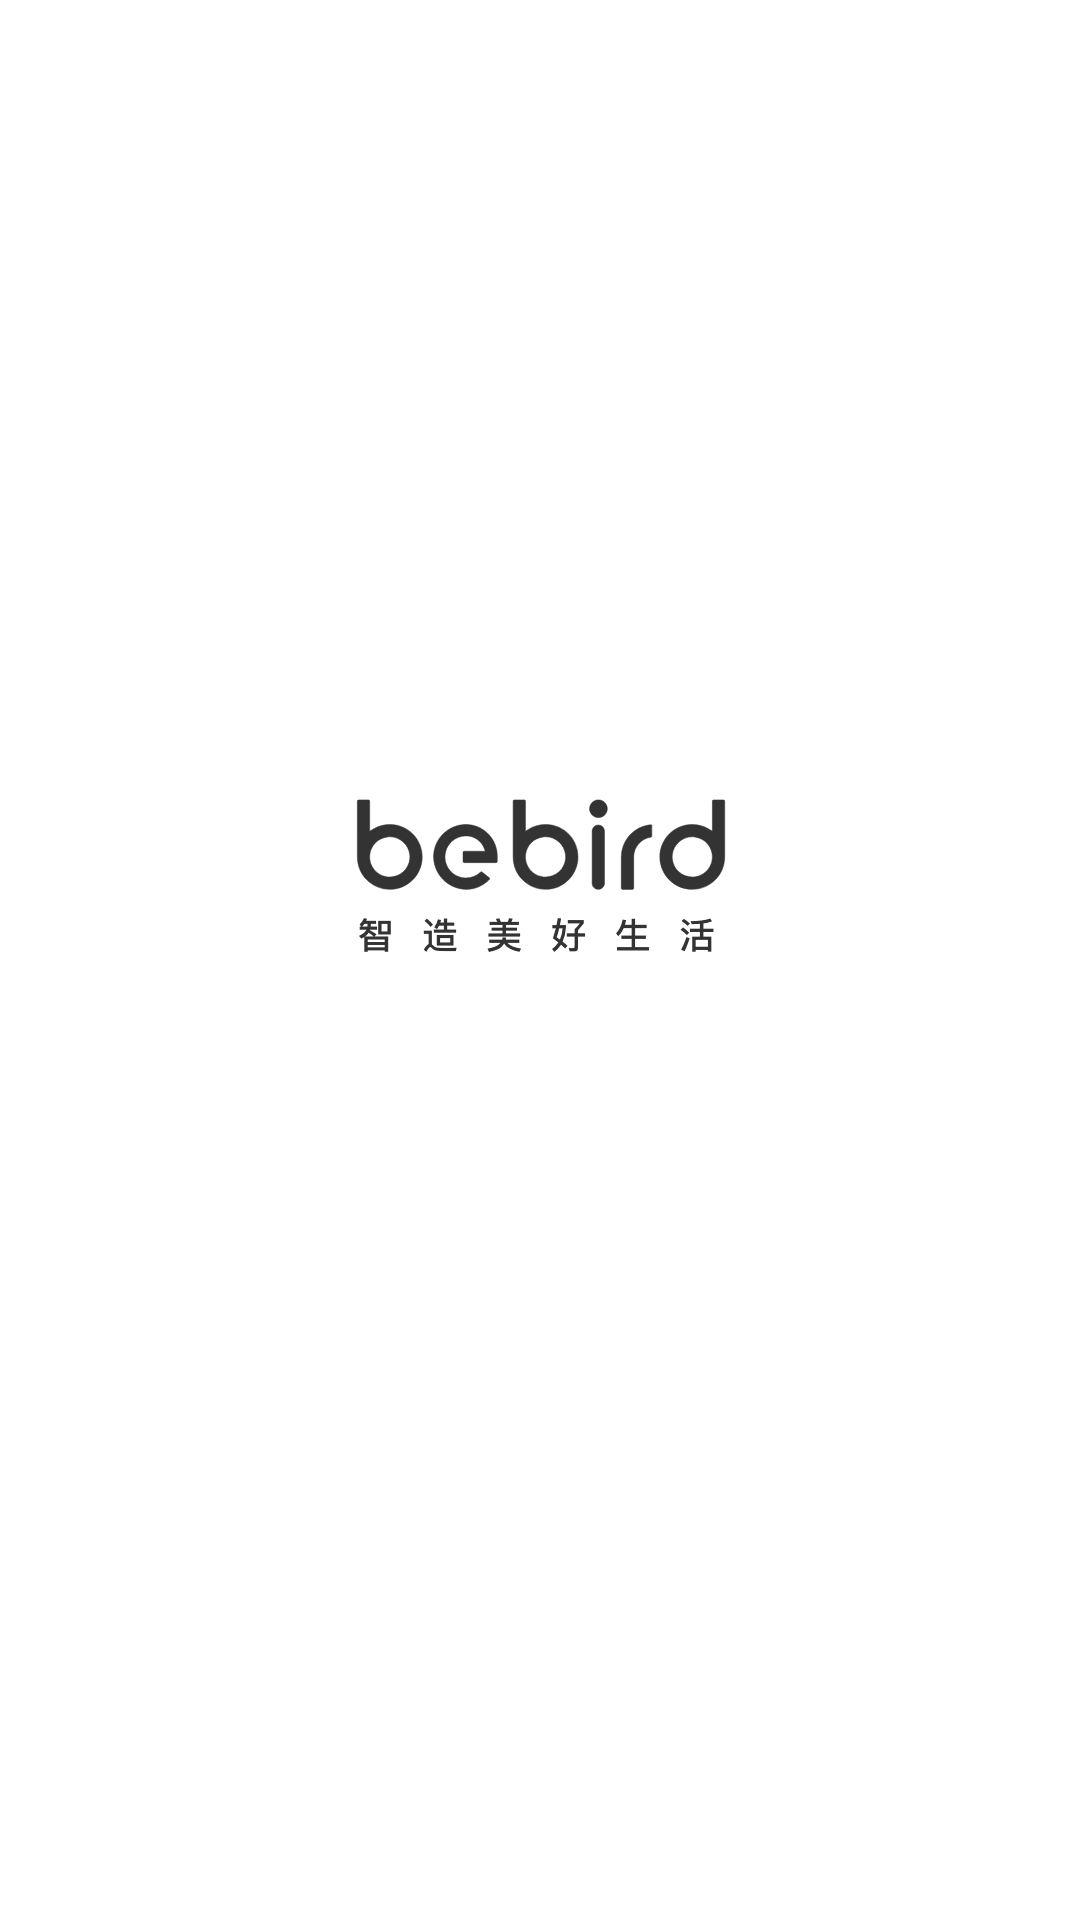 bebirdv6.1.52截图5